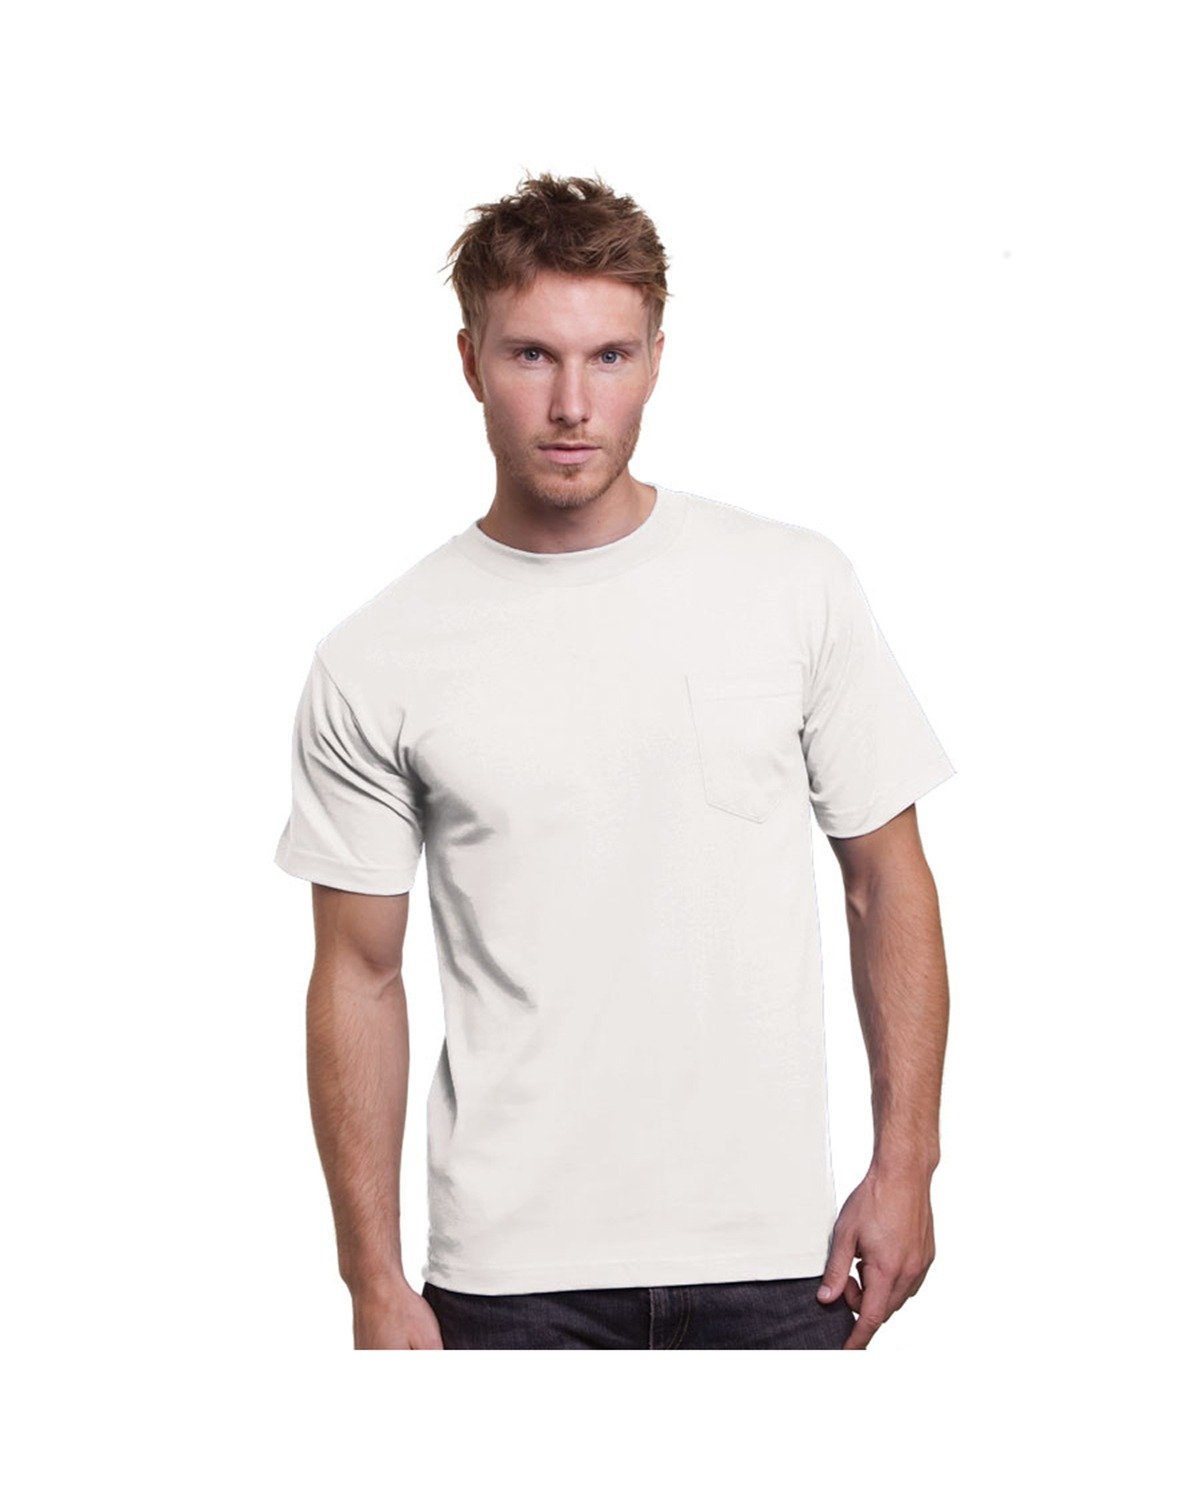 Unisex Union-Made Pocket T-Shirt-